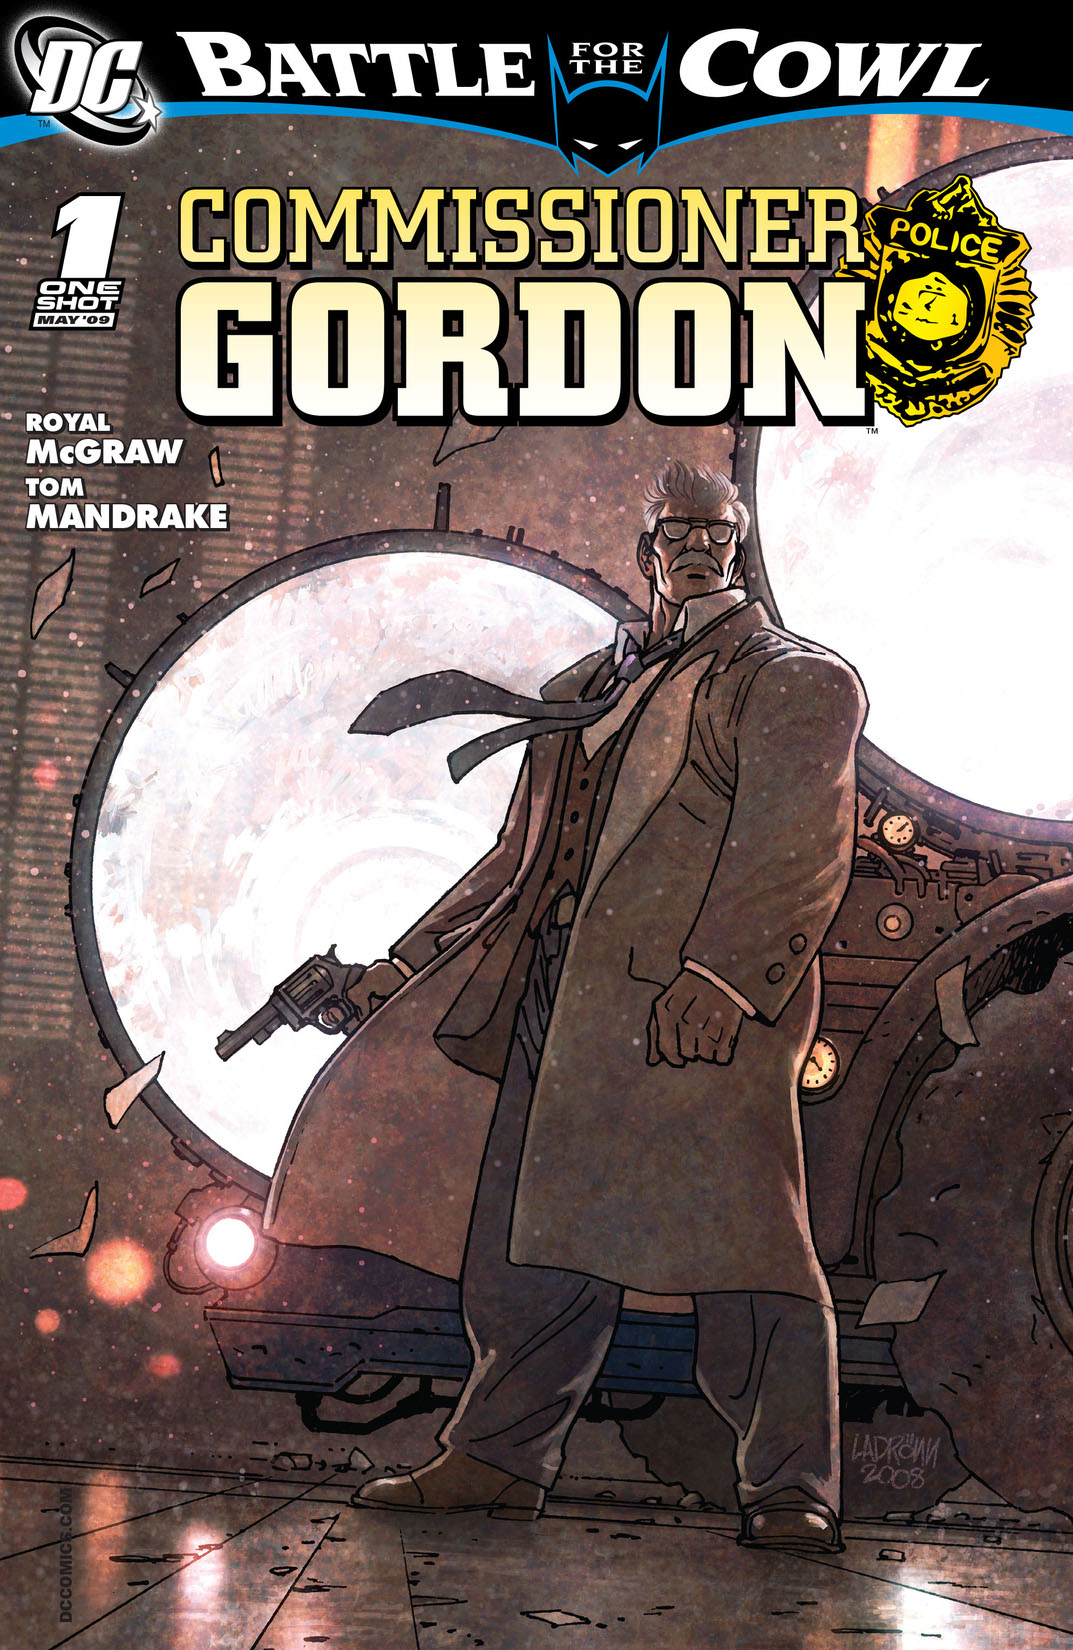 Batman: Battle for the Cowl: Commissioner Gordon #1 preview images